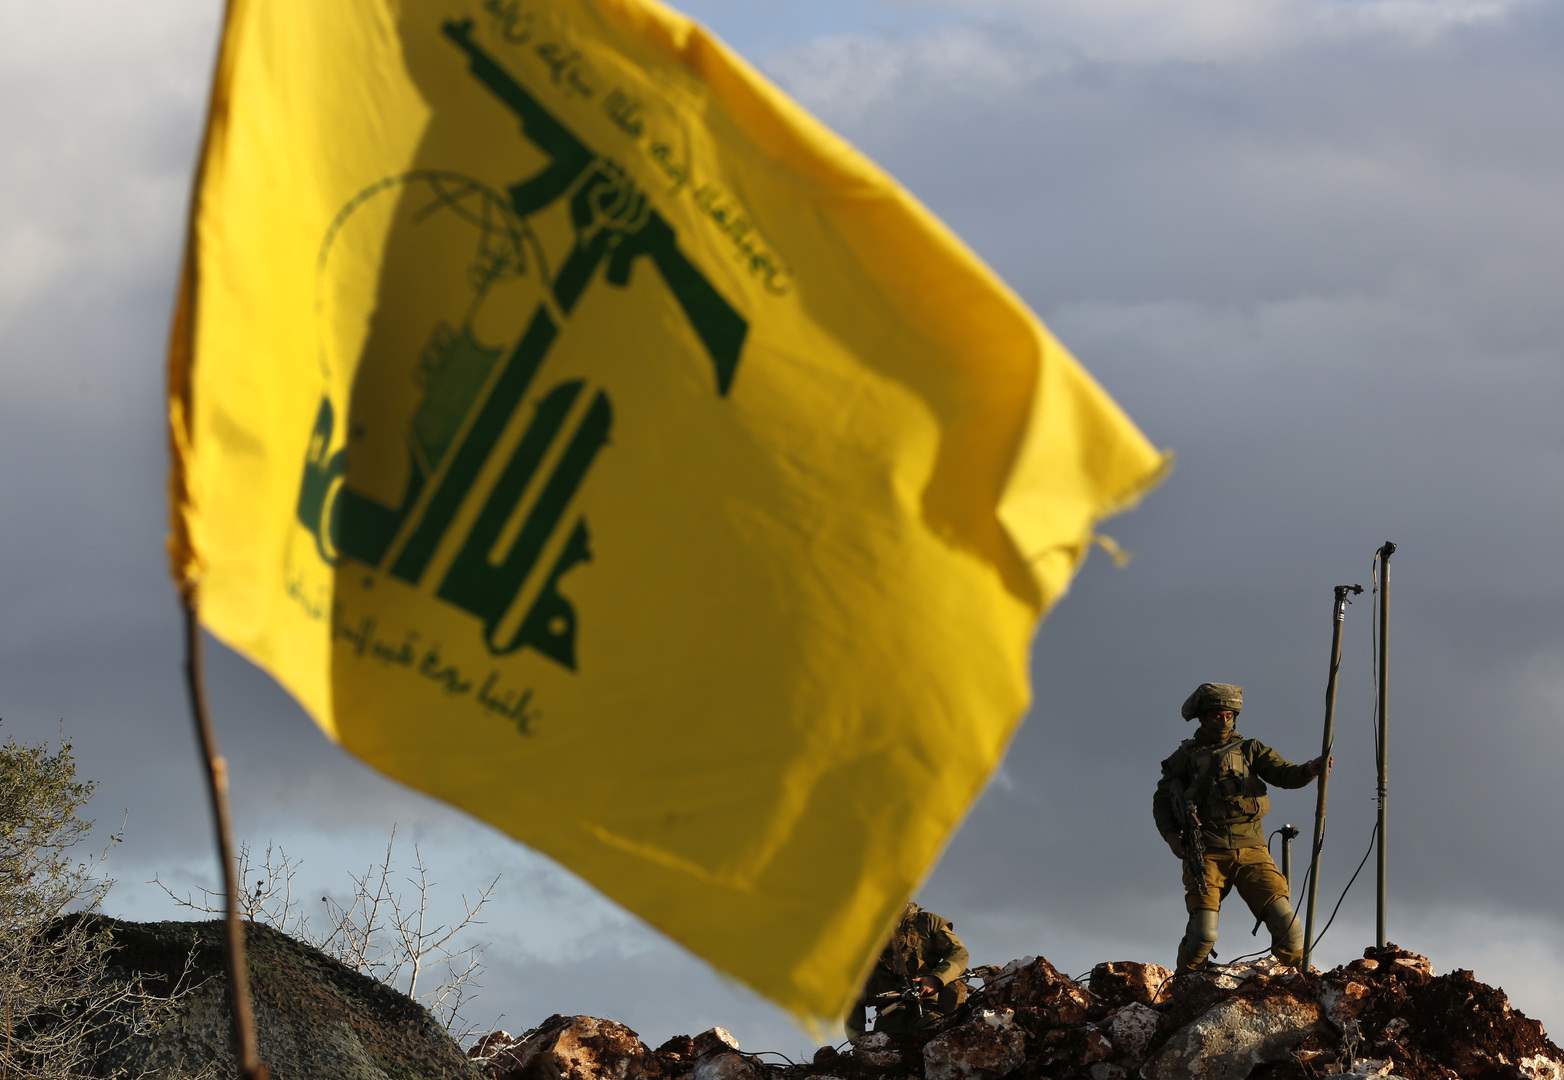  حزب الله: إستهدفنا تجمعاً لجنود ‏العدو في ثكنة زرعيت بالأسلحة المناسبة وأوقعنا أفراده بيت قتيل وجريح